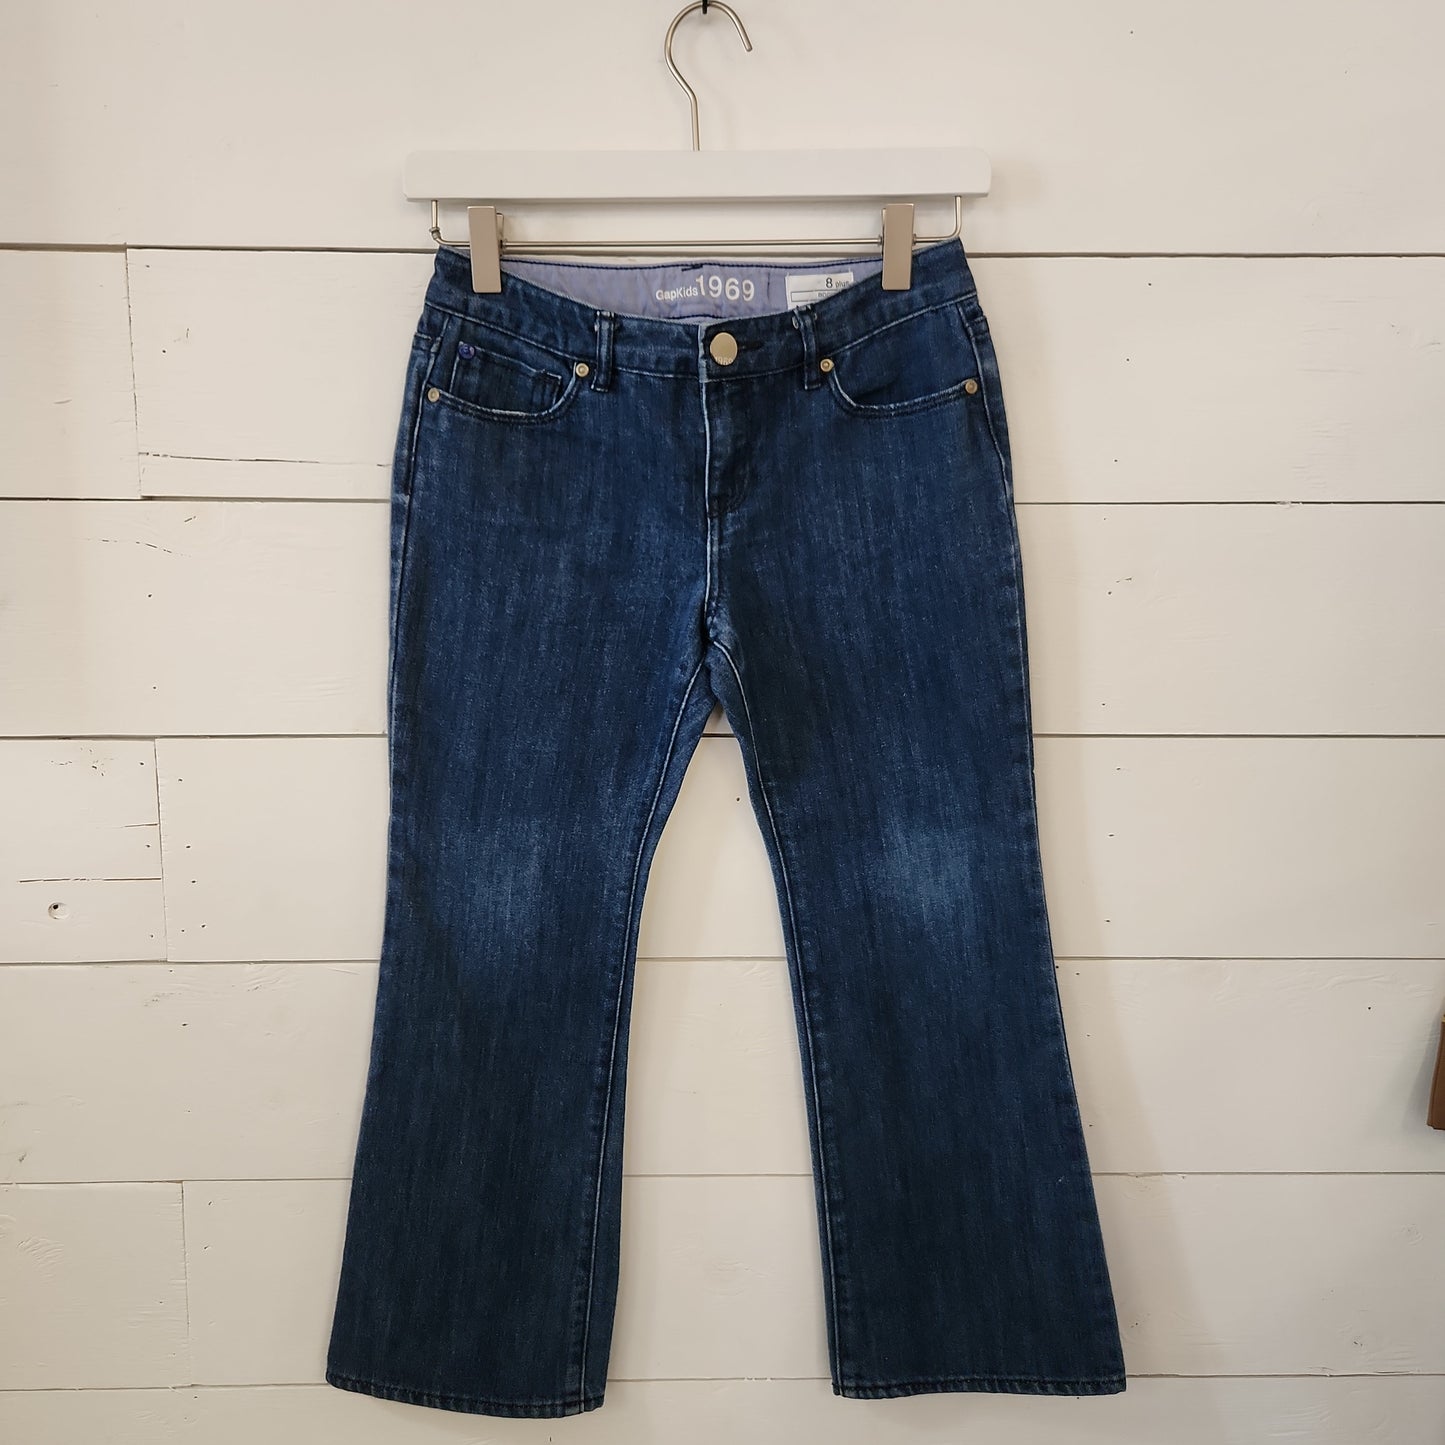 Size 8 | Gap Kids Plus Bootcut Denim Jeans | Secondhand